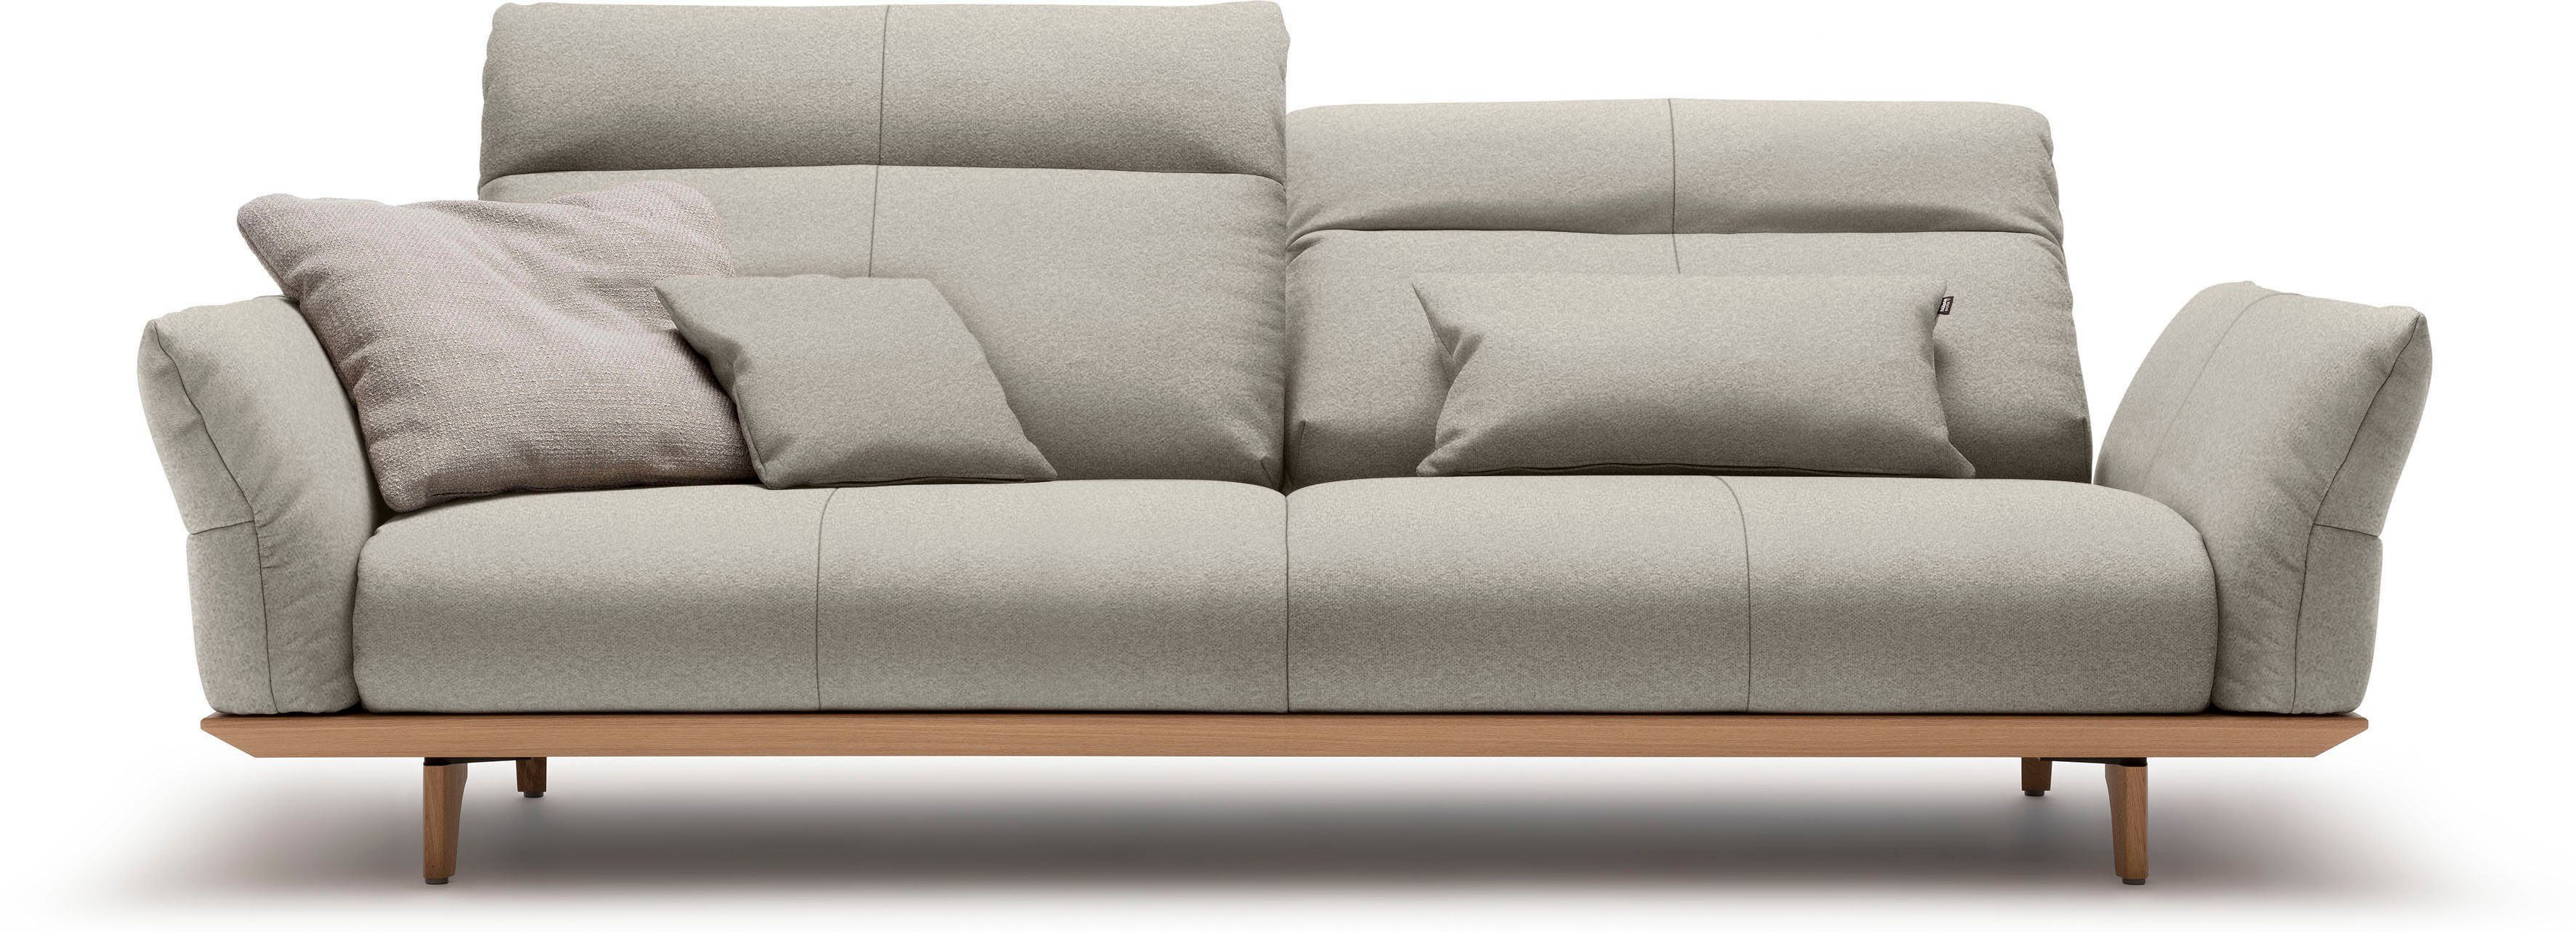 hülsta 3,5-Sitzer sofa cm natur, Eiche Eiche, Breite Füße 228 hs.460, in Sockel